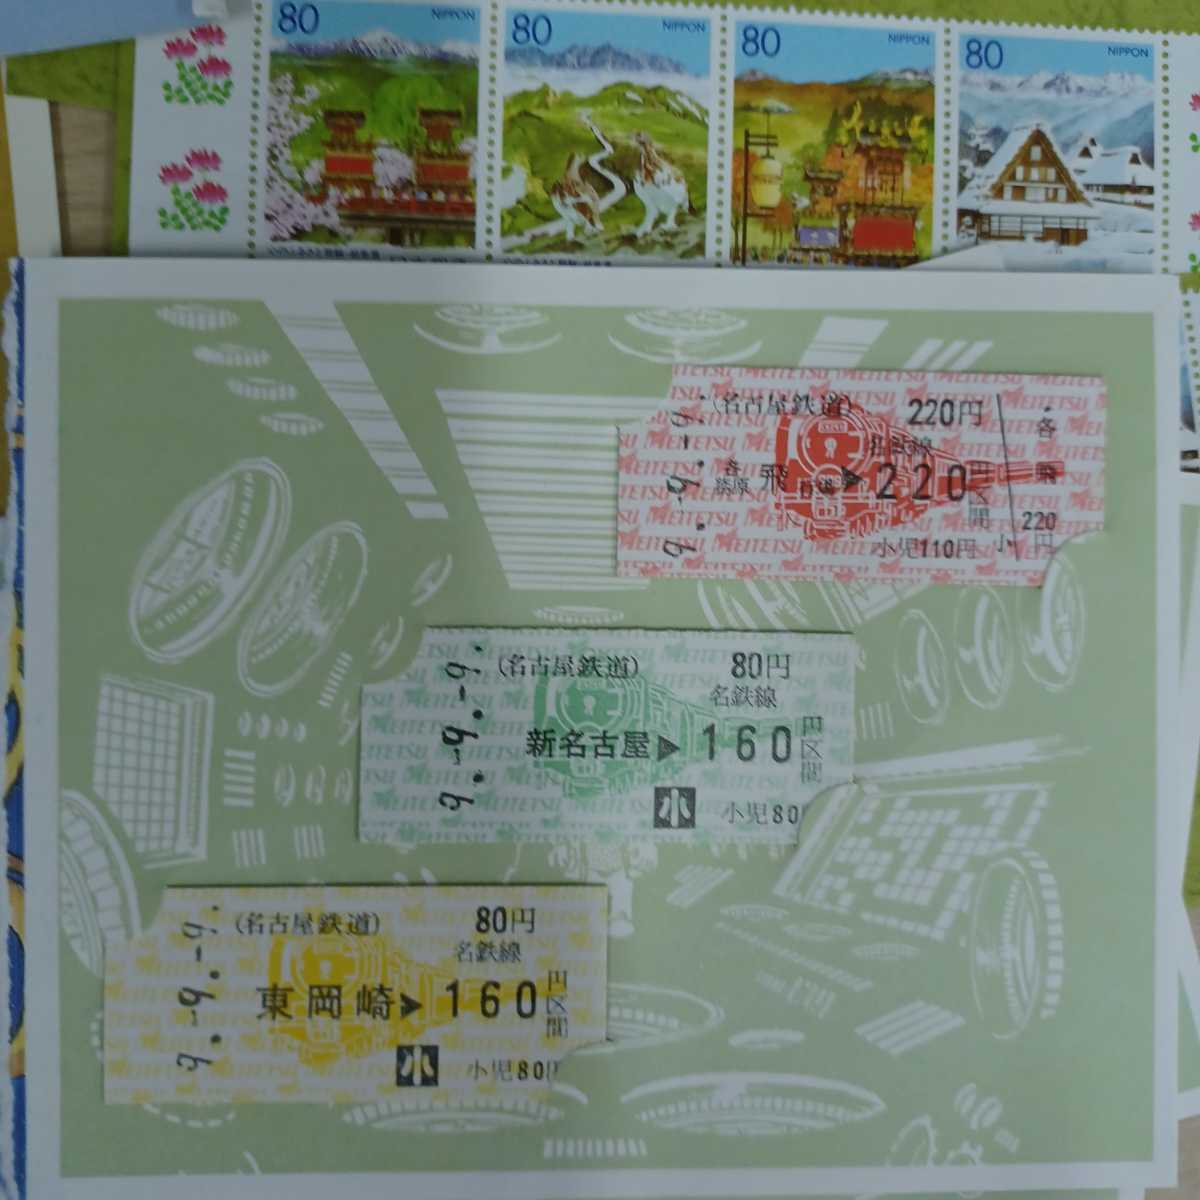  камень )⑨ юбилейная марка открытка билет совместно Япония mail .. японские песни серии и т.п. различный коллекция хобби 220704 C1-2